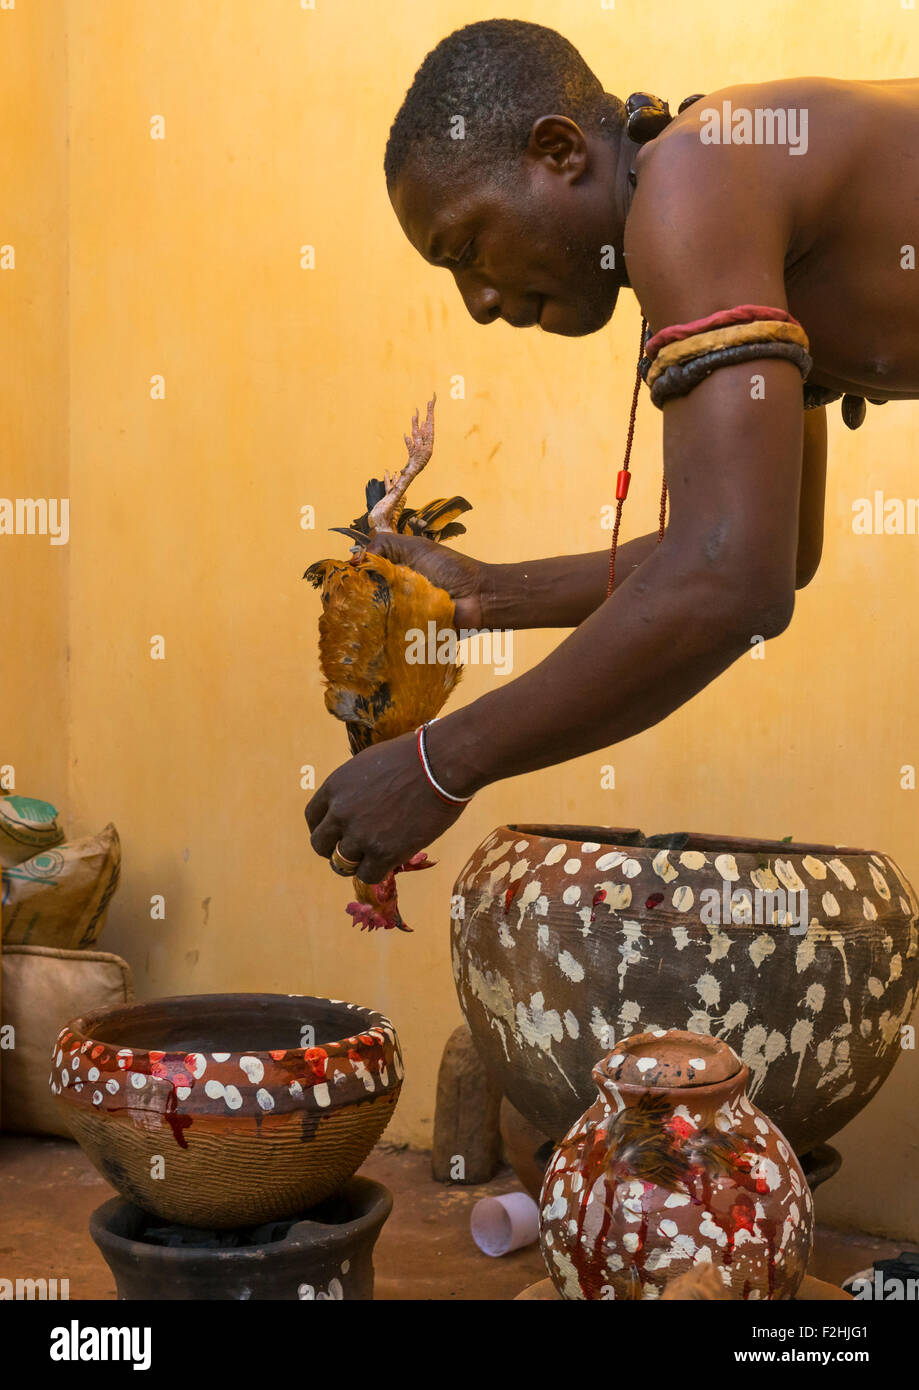 Le Bénin, en Afrique de l'Ouest, Bonhicon, l'abattage d'un poulet dans un sacrifice rituel au cours d'une cérémonie vaudou gérés par kagbanon bebe prêtre Banque D'Images